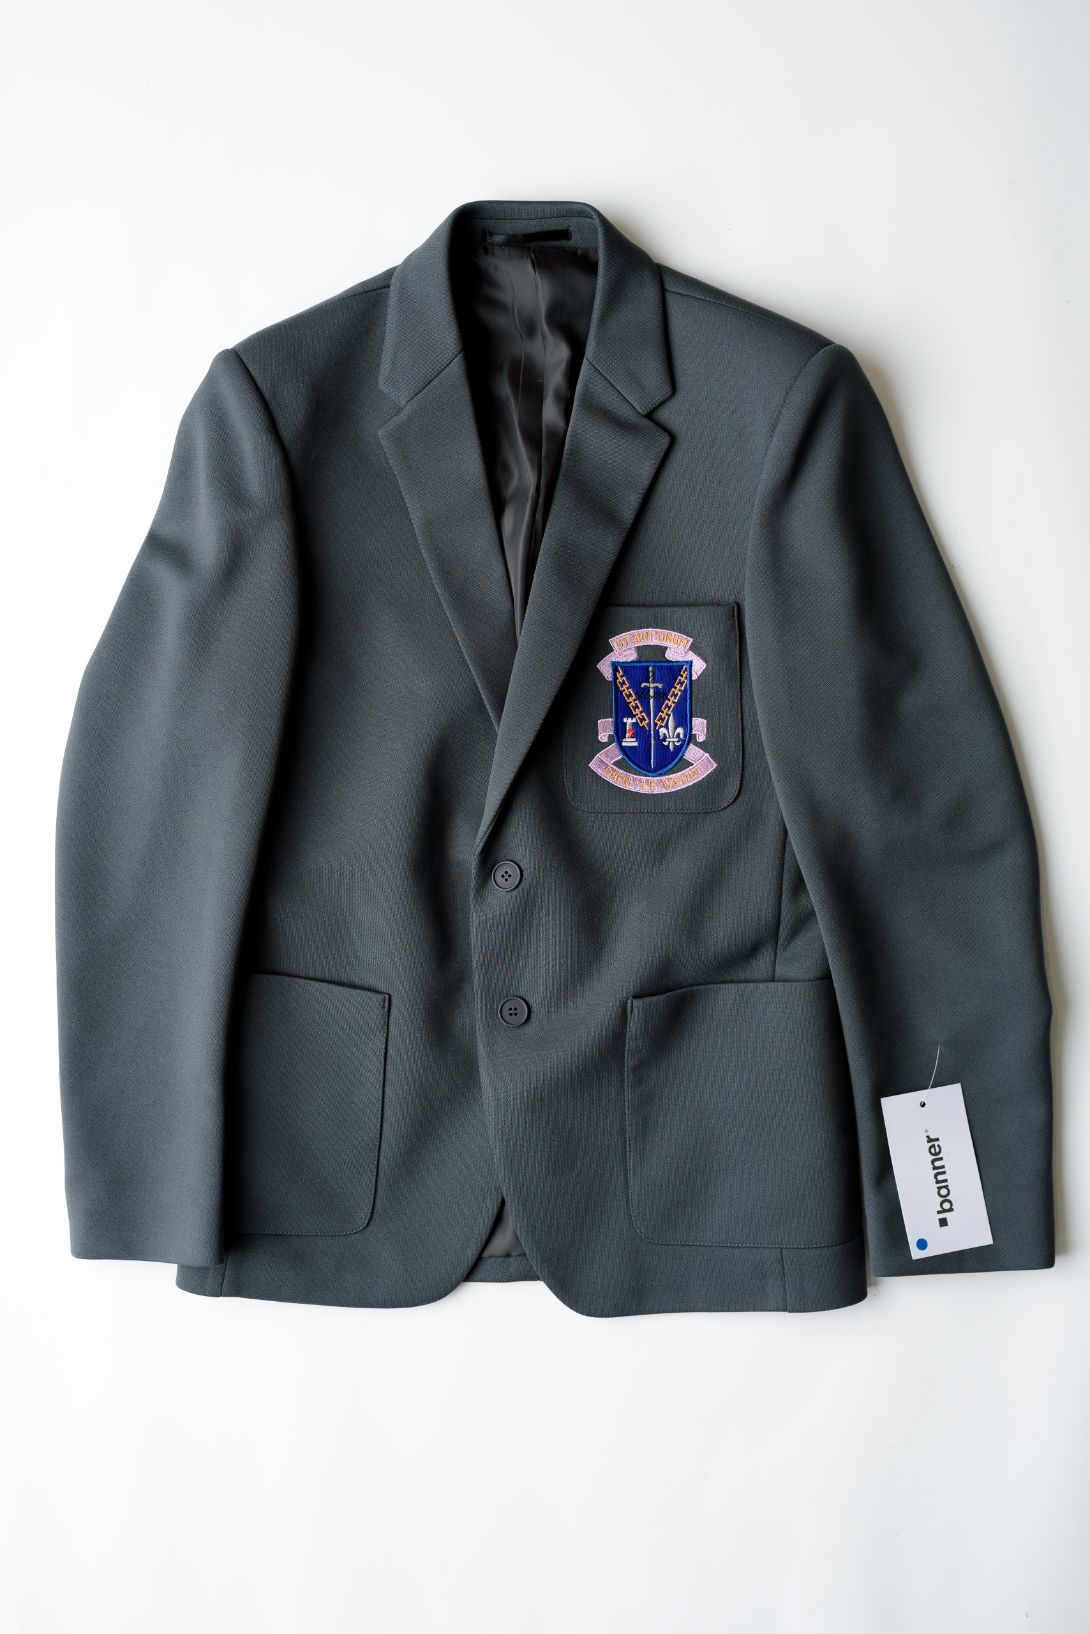 St Louis Grammar School Boys Grey Junior Blazer (Year 8-12) – Holmes Uniform